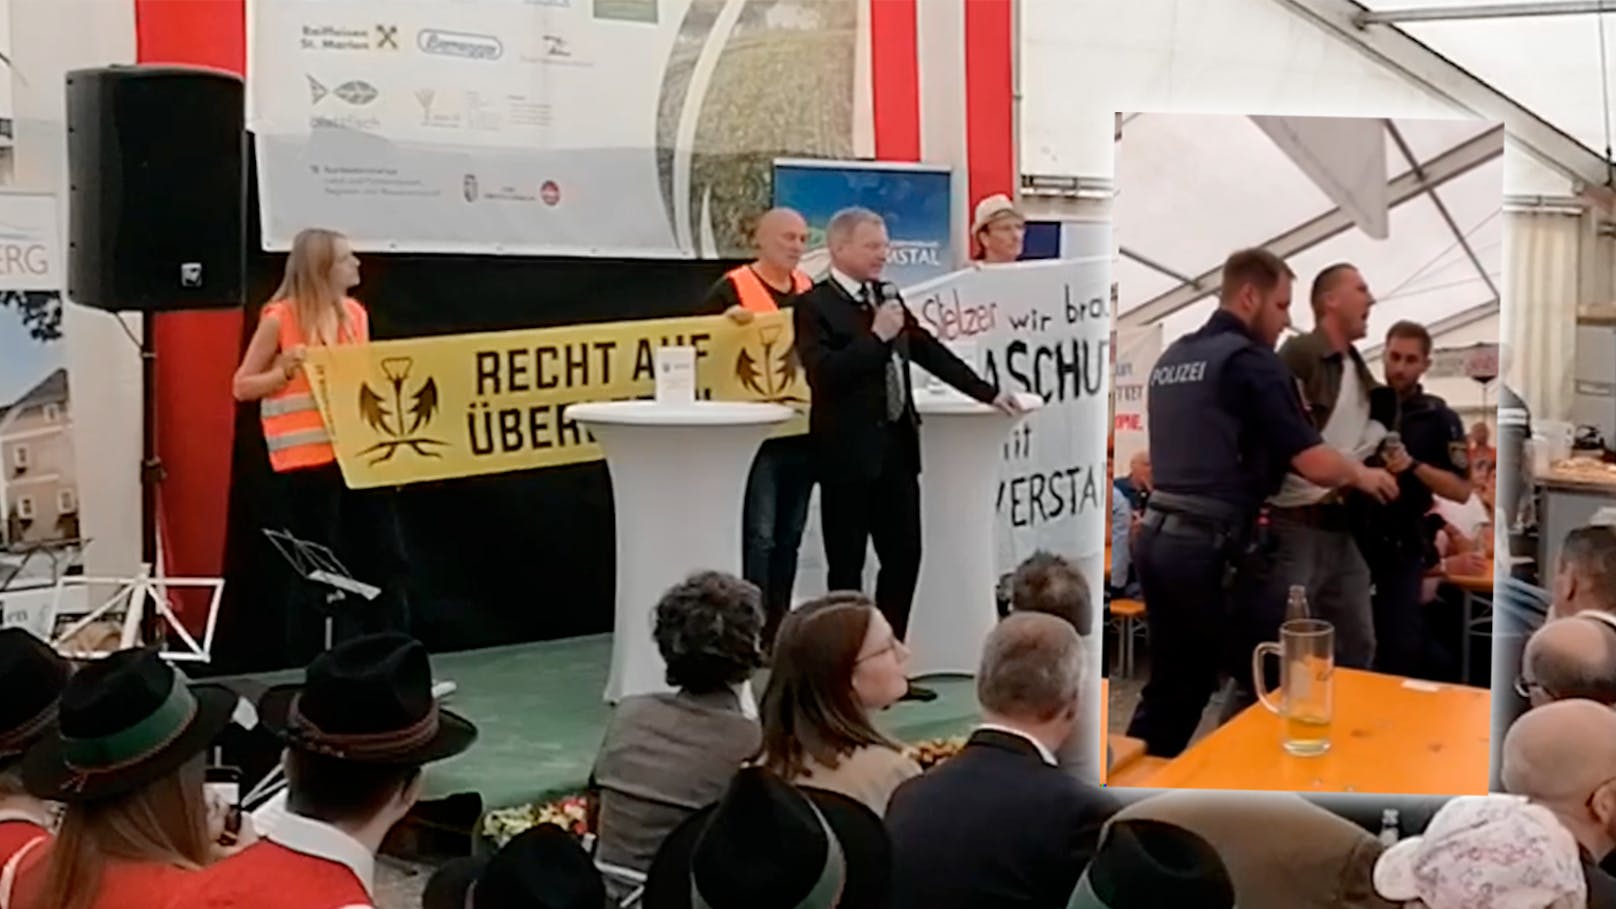 Ex-Skistar bei Stelzer-Rede von Polizisten abgeführt